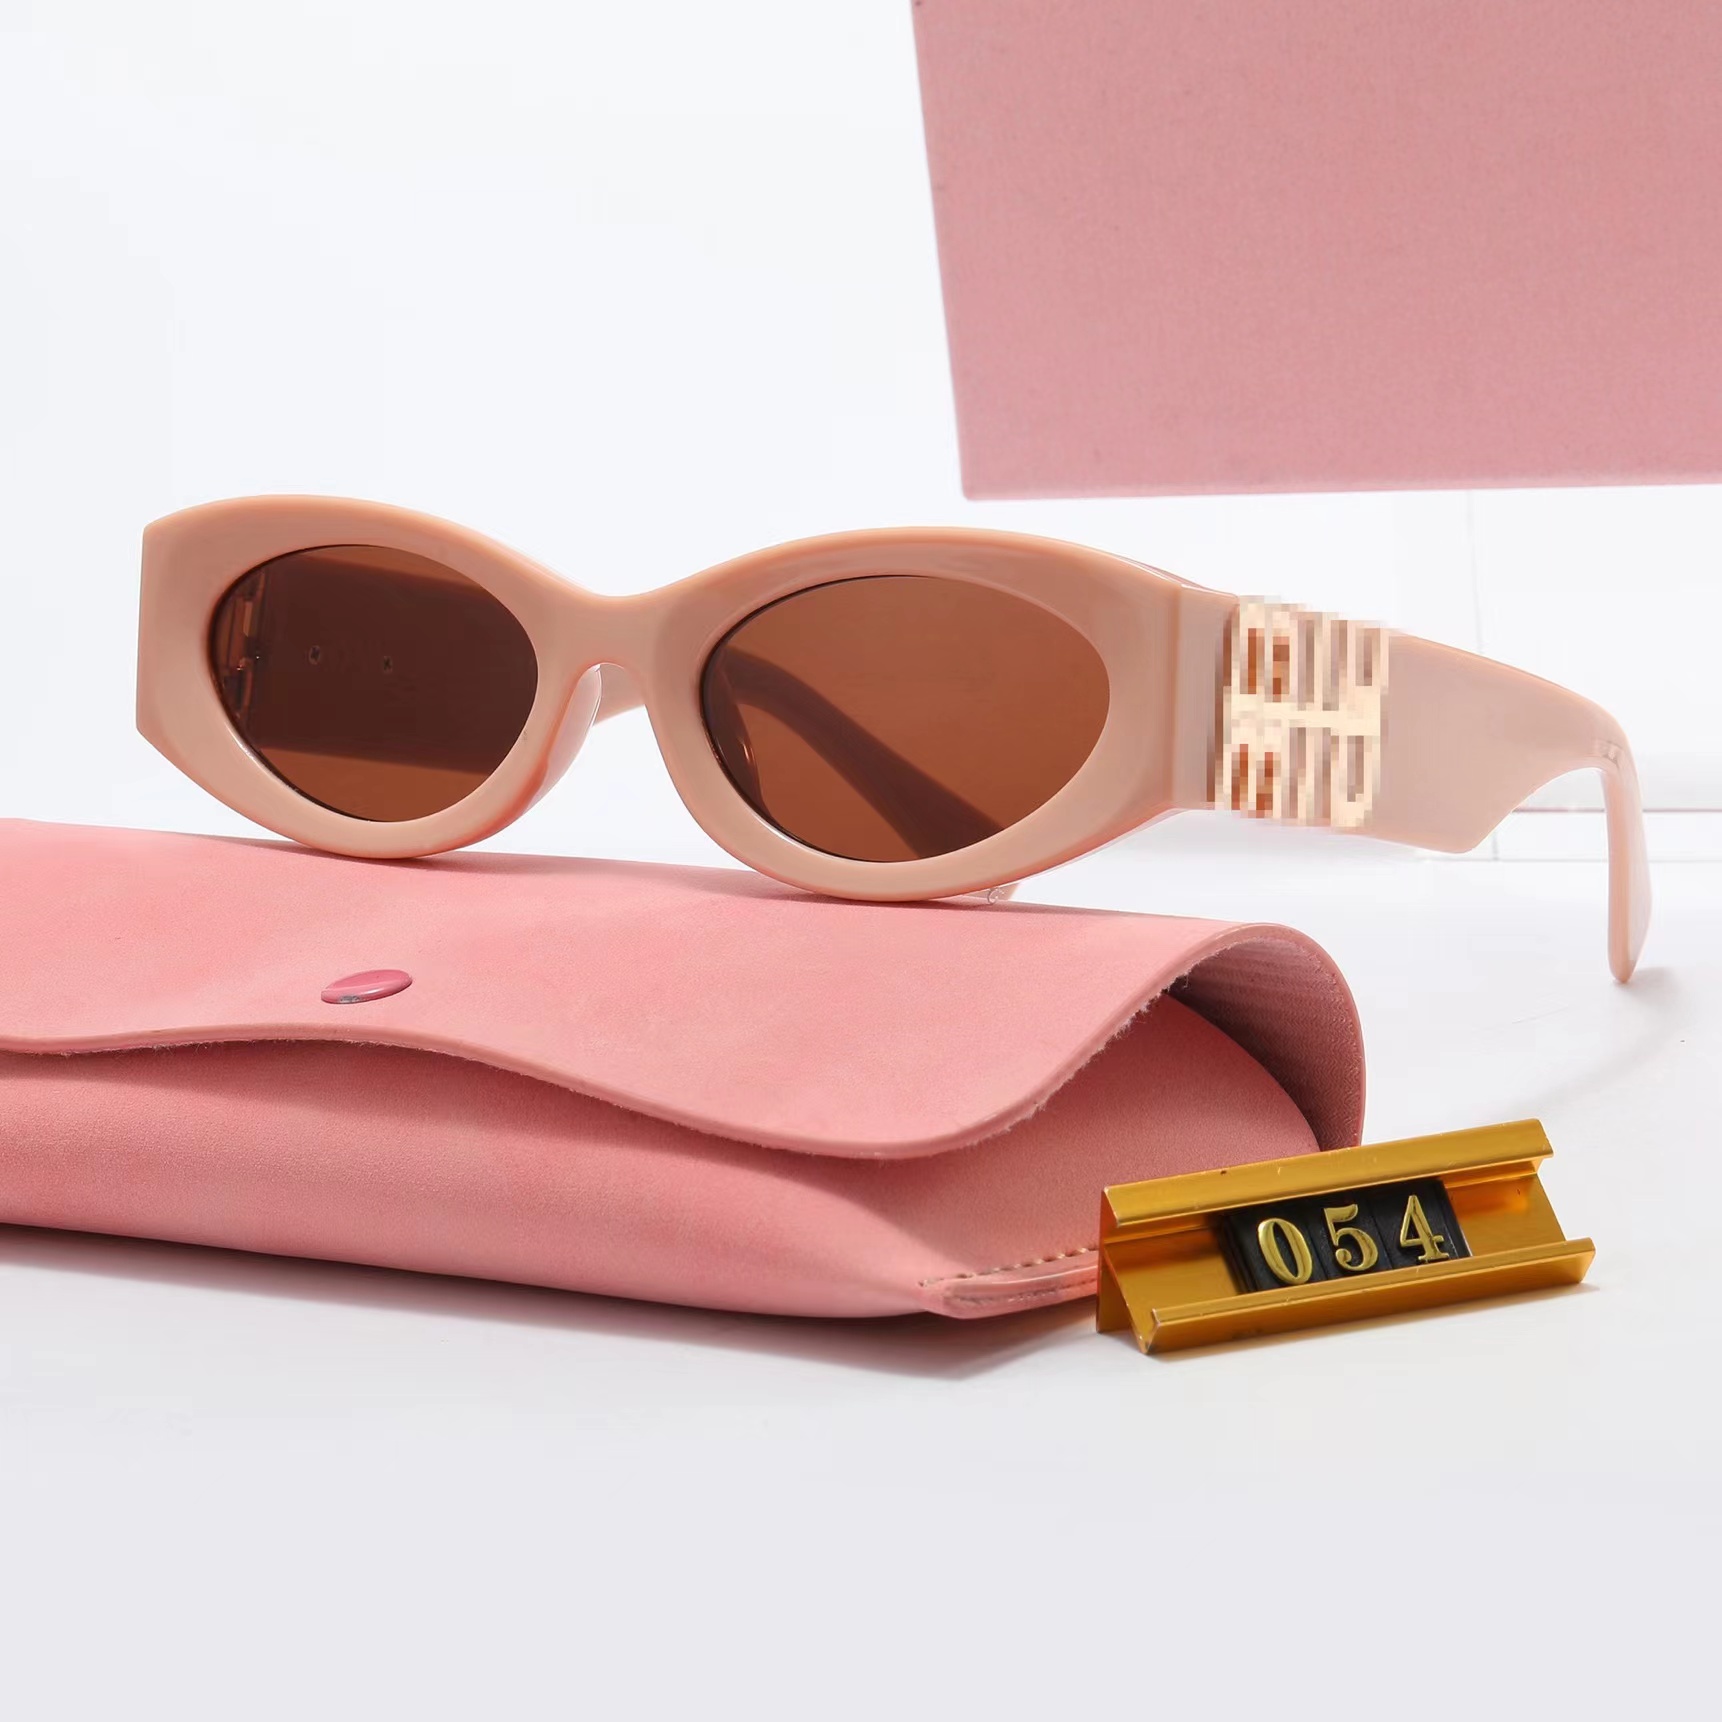 Anteojos mujer diseñador gafas de sol gafas de moda hombres y mujeres playa al aire libre gafas de protección solar anti-luz azul radiación ojo de gato gafas es